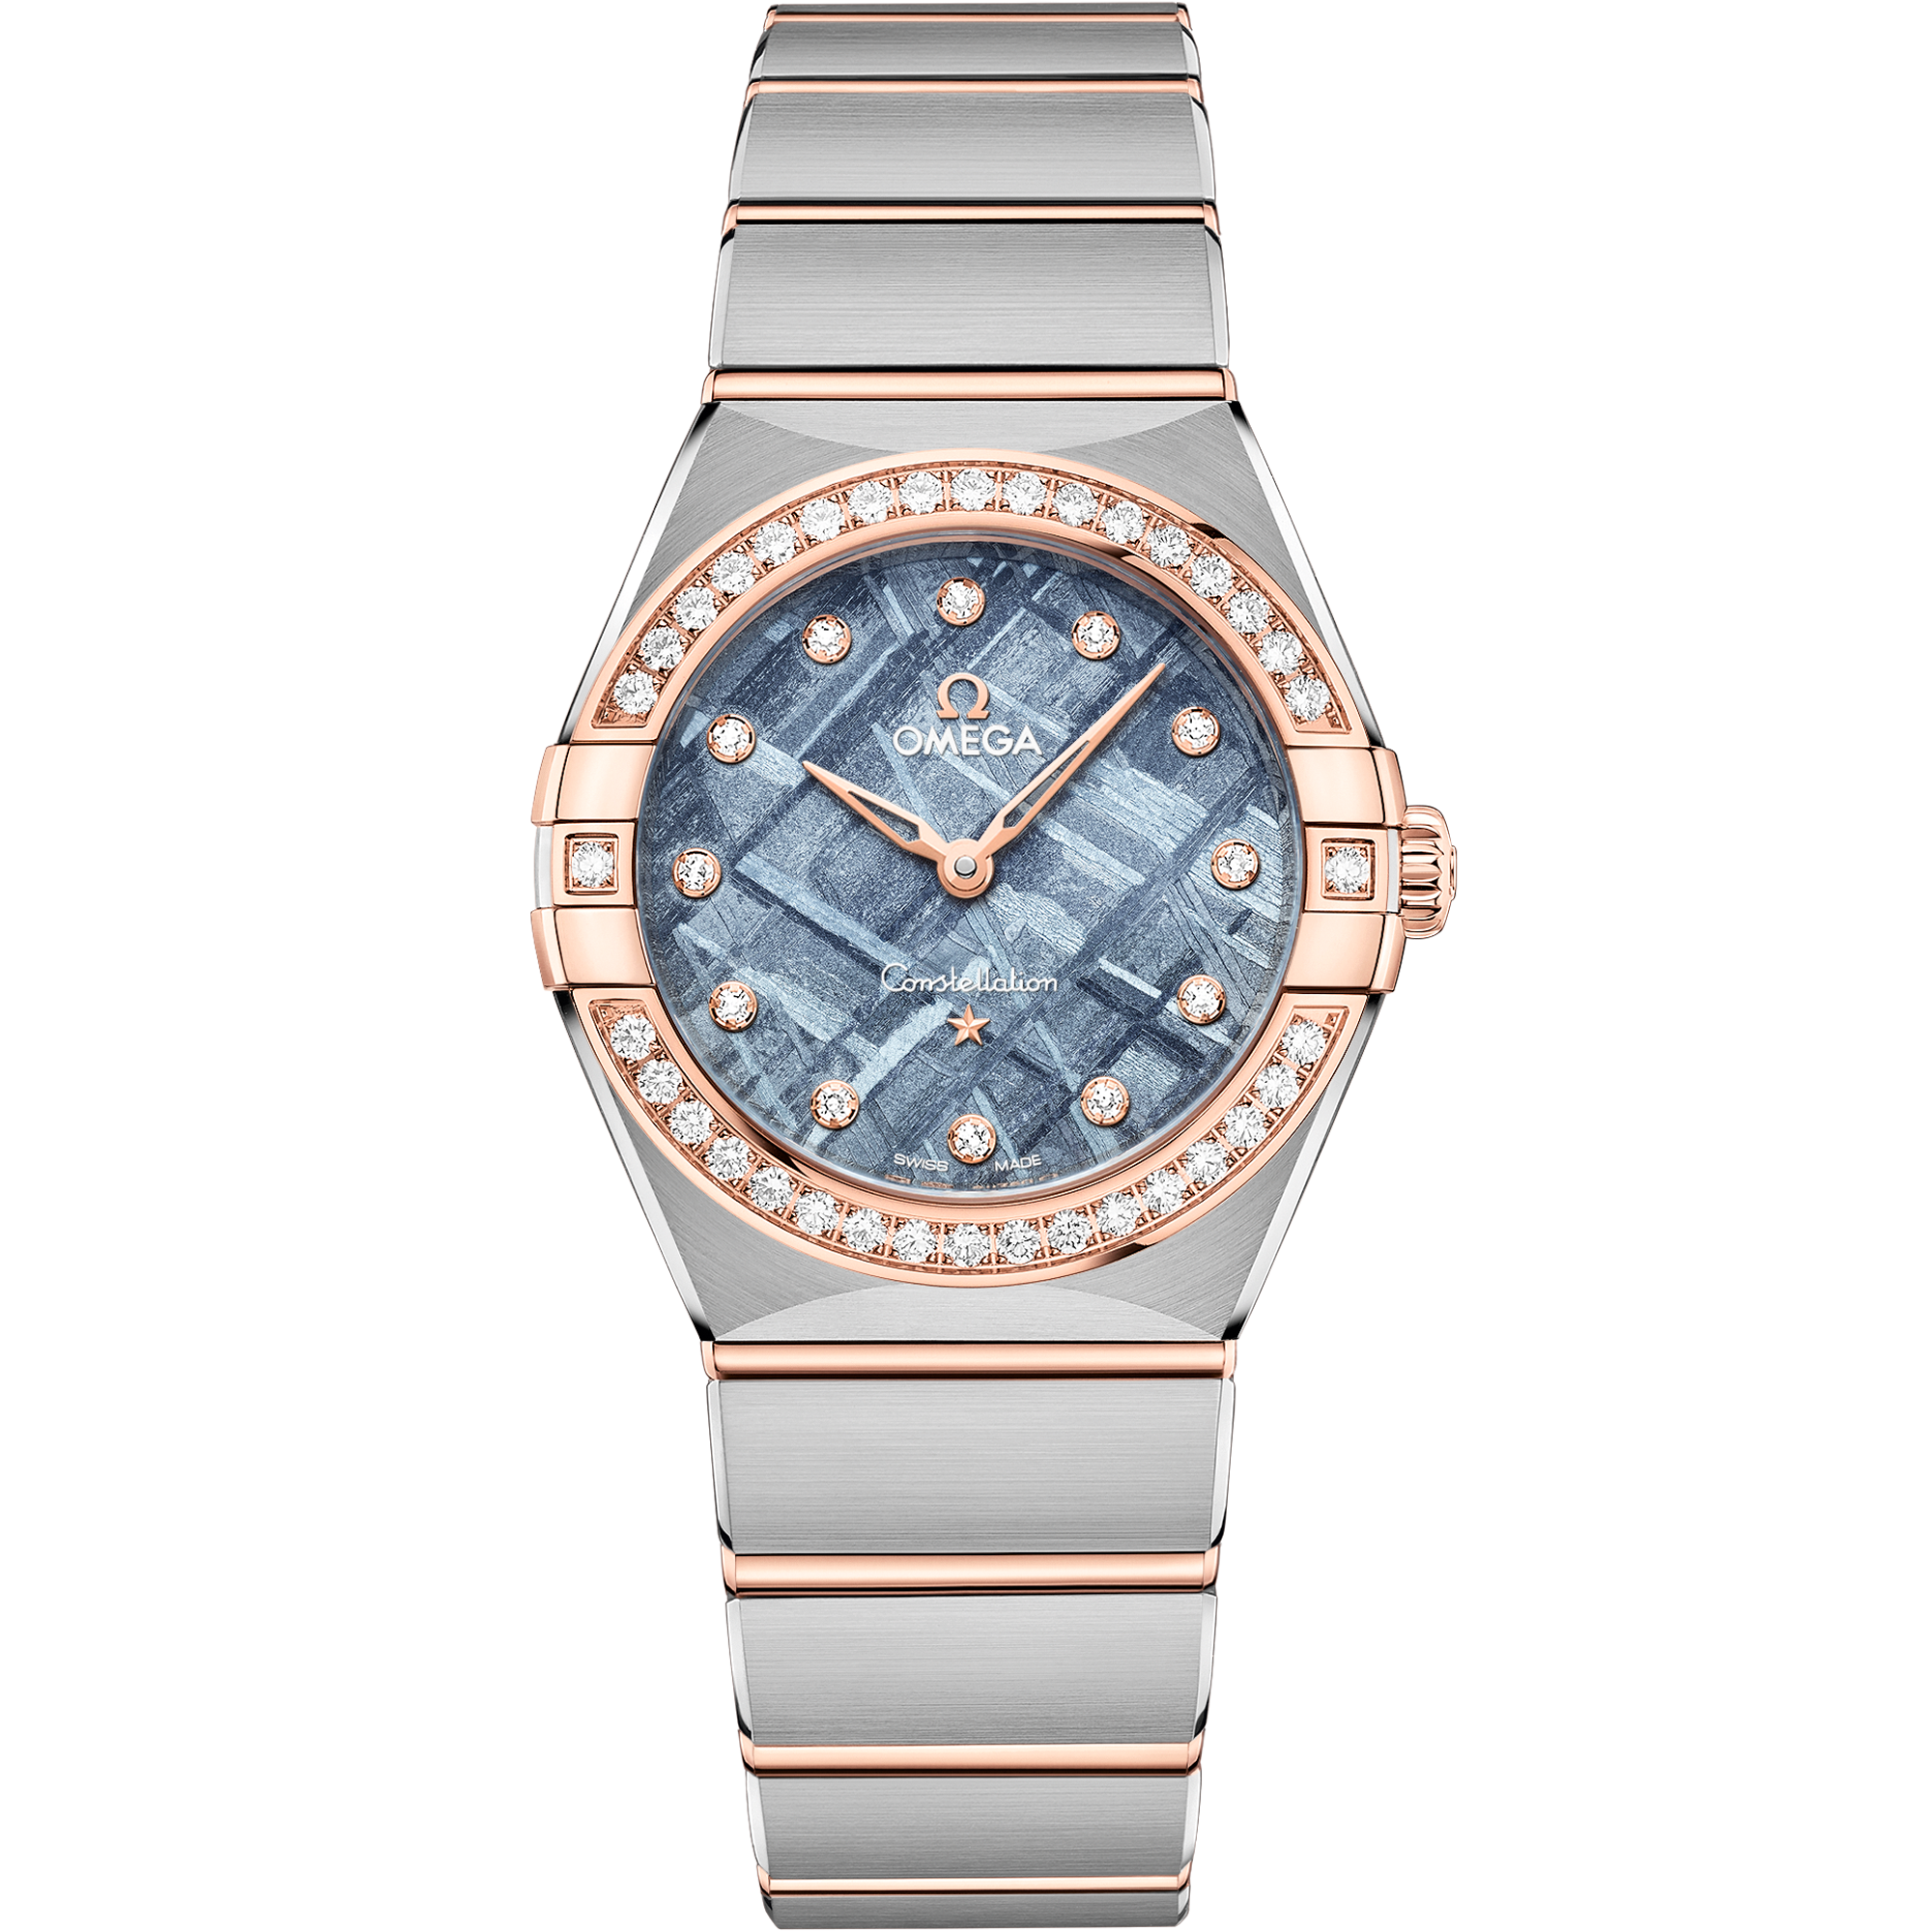 Relógio com mostrador Azul com caixa em Aço - ouro Sedna™ e Constellation 28 mm, Aço - ouro Sedna™ em Aço - ouro Sedna™ - 131.25.28.60.99.001 em Aço - ouro Sedna™ bracelet